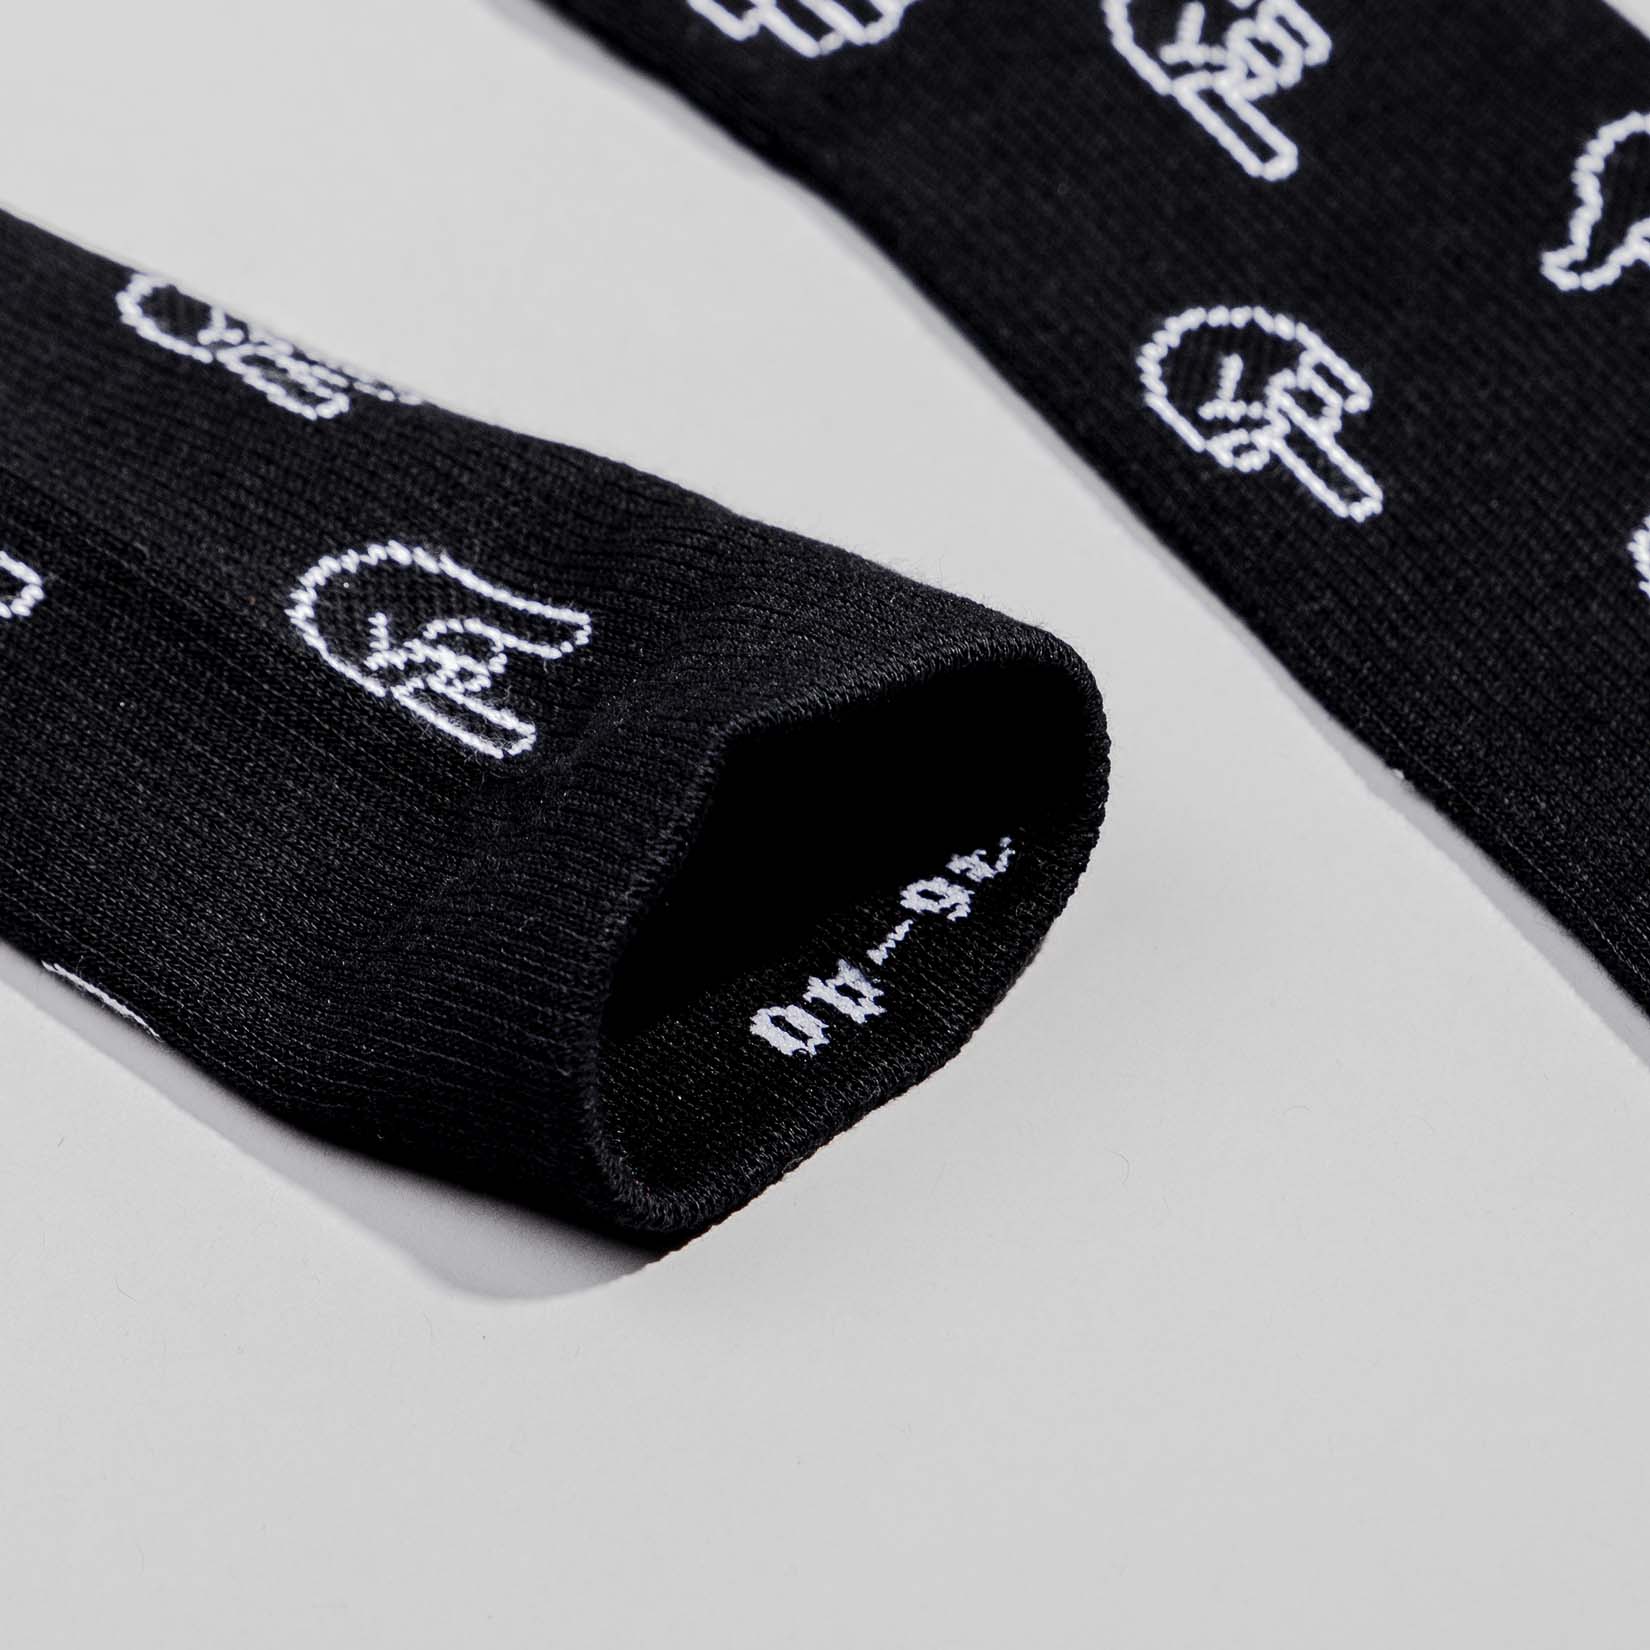 Fyngers Pattern - Premium Socken schwarz/weiß